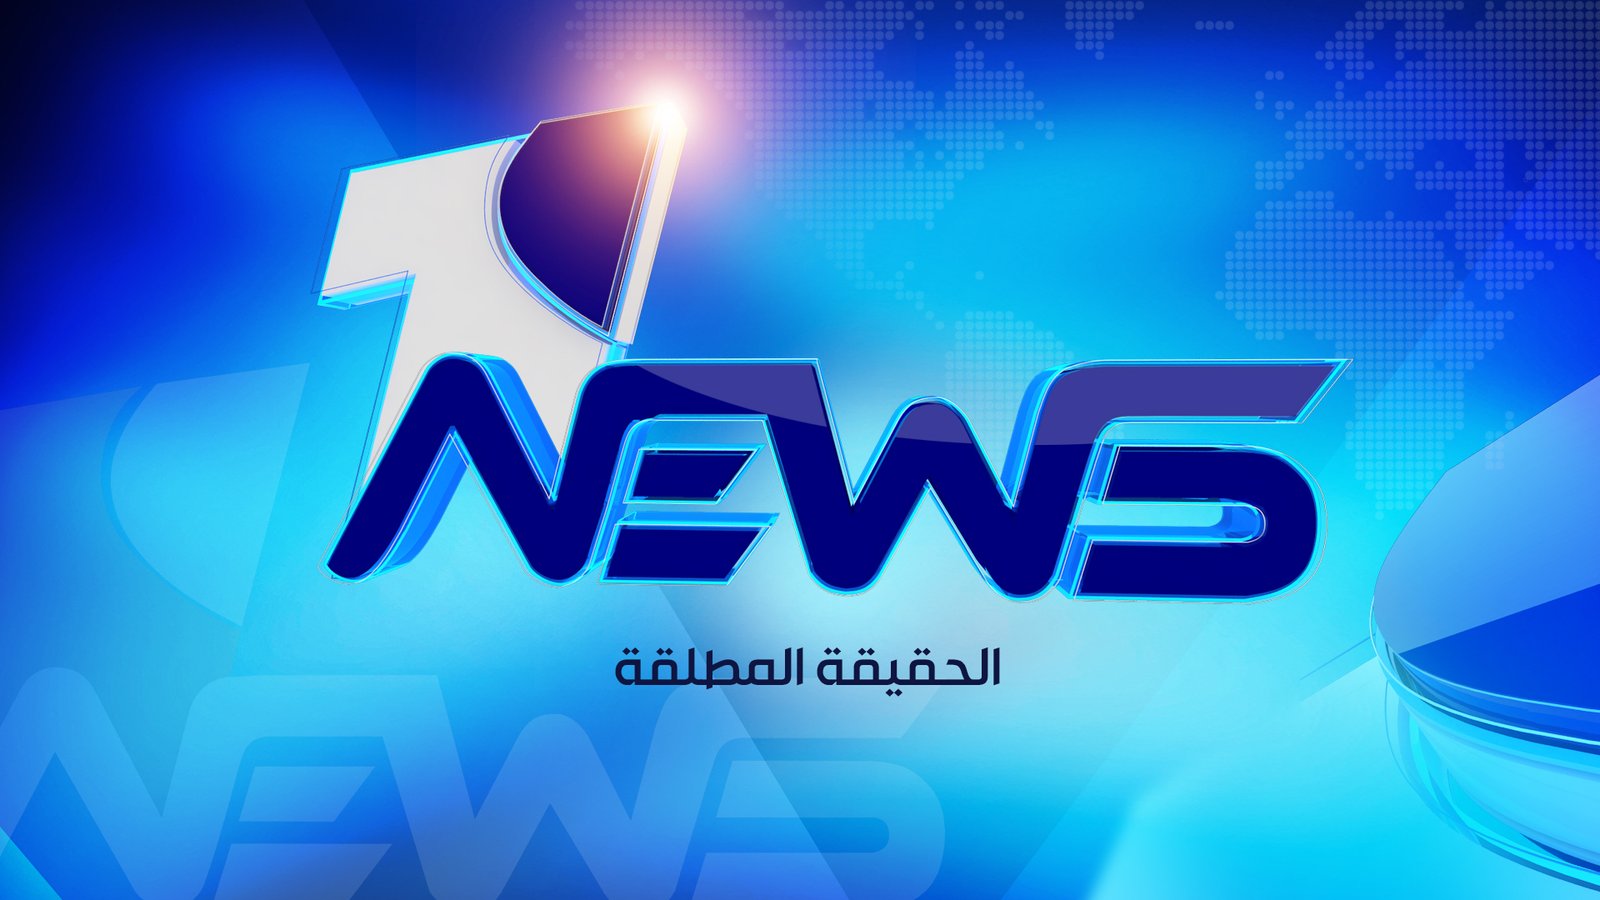 احمد الخضر لوان نيوز: التيار الصدري سيسعى الى تظاهرات شعبية لعدم تمرير اي حكومة يرفضها